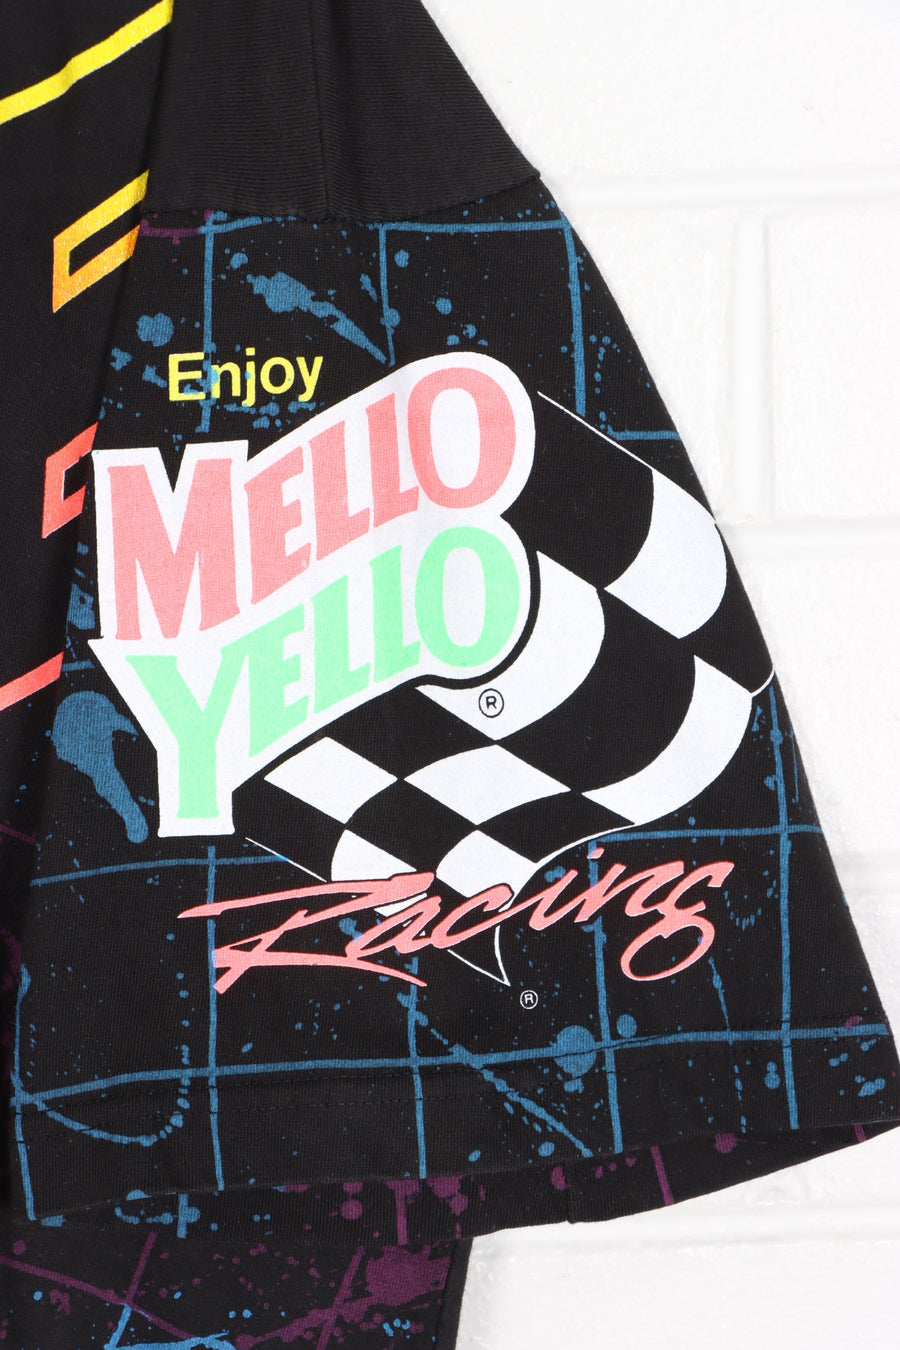 NASCAR 1993 Kyle Petty "Mello Yello" All Over T-Shirt USA Made (XL)